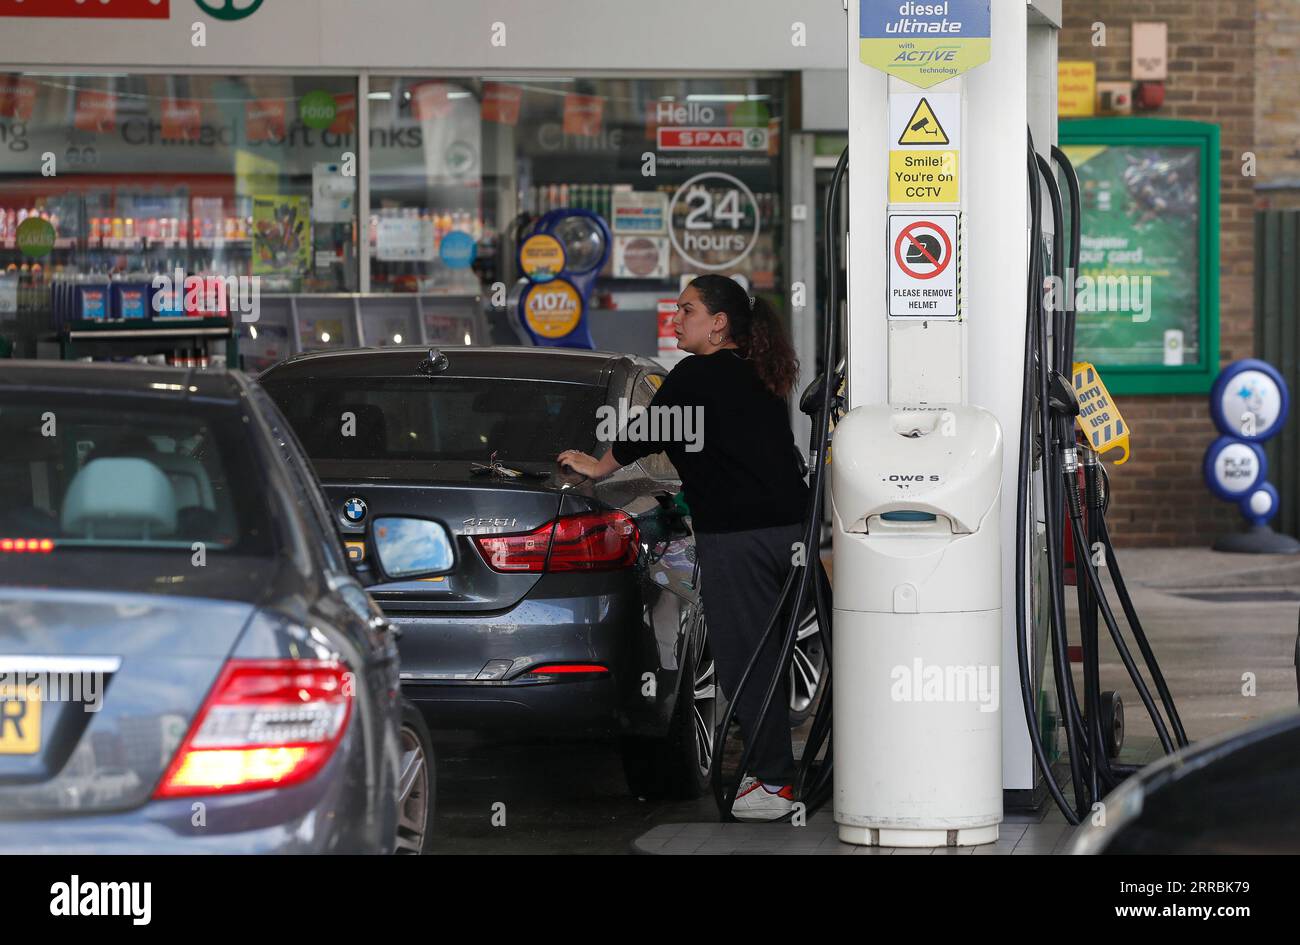 210927 -- LONDRA, 27 settembre 2021 -- Un autista riempie la sua auto in un distributore di benzina a Londra, in Gran Bretagna, il 27 settembre 2021. Secondo la BBC, la Petrol Retailer Association nel Regno Unito ha avvertito che fino a due terzi dei suoi membri, che erano quasi 5.500 punti vendita indipendenti, sono senza carburante, mentre il resto è parzialmente asciutto e si sta esaurendo a breve. BRITAIN-LONDON-BENZINAIO-FUEL-SHORTAGE HANXYAN PUBLICATIONXNOTXINXCHN Foto Stock